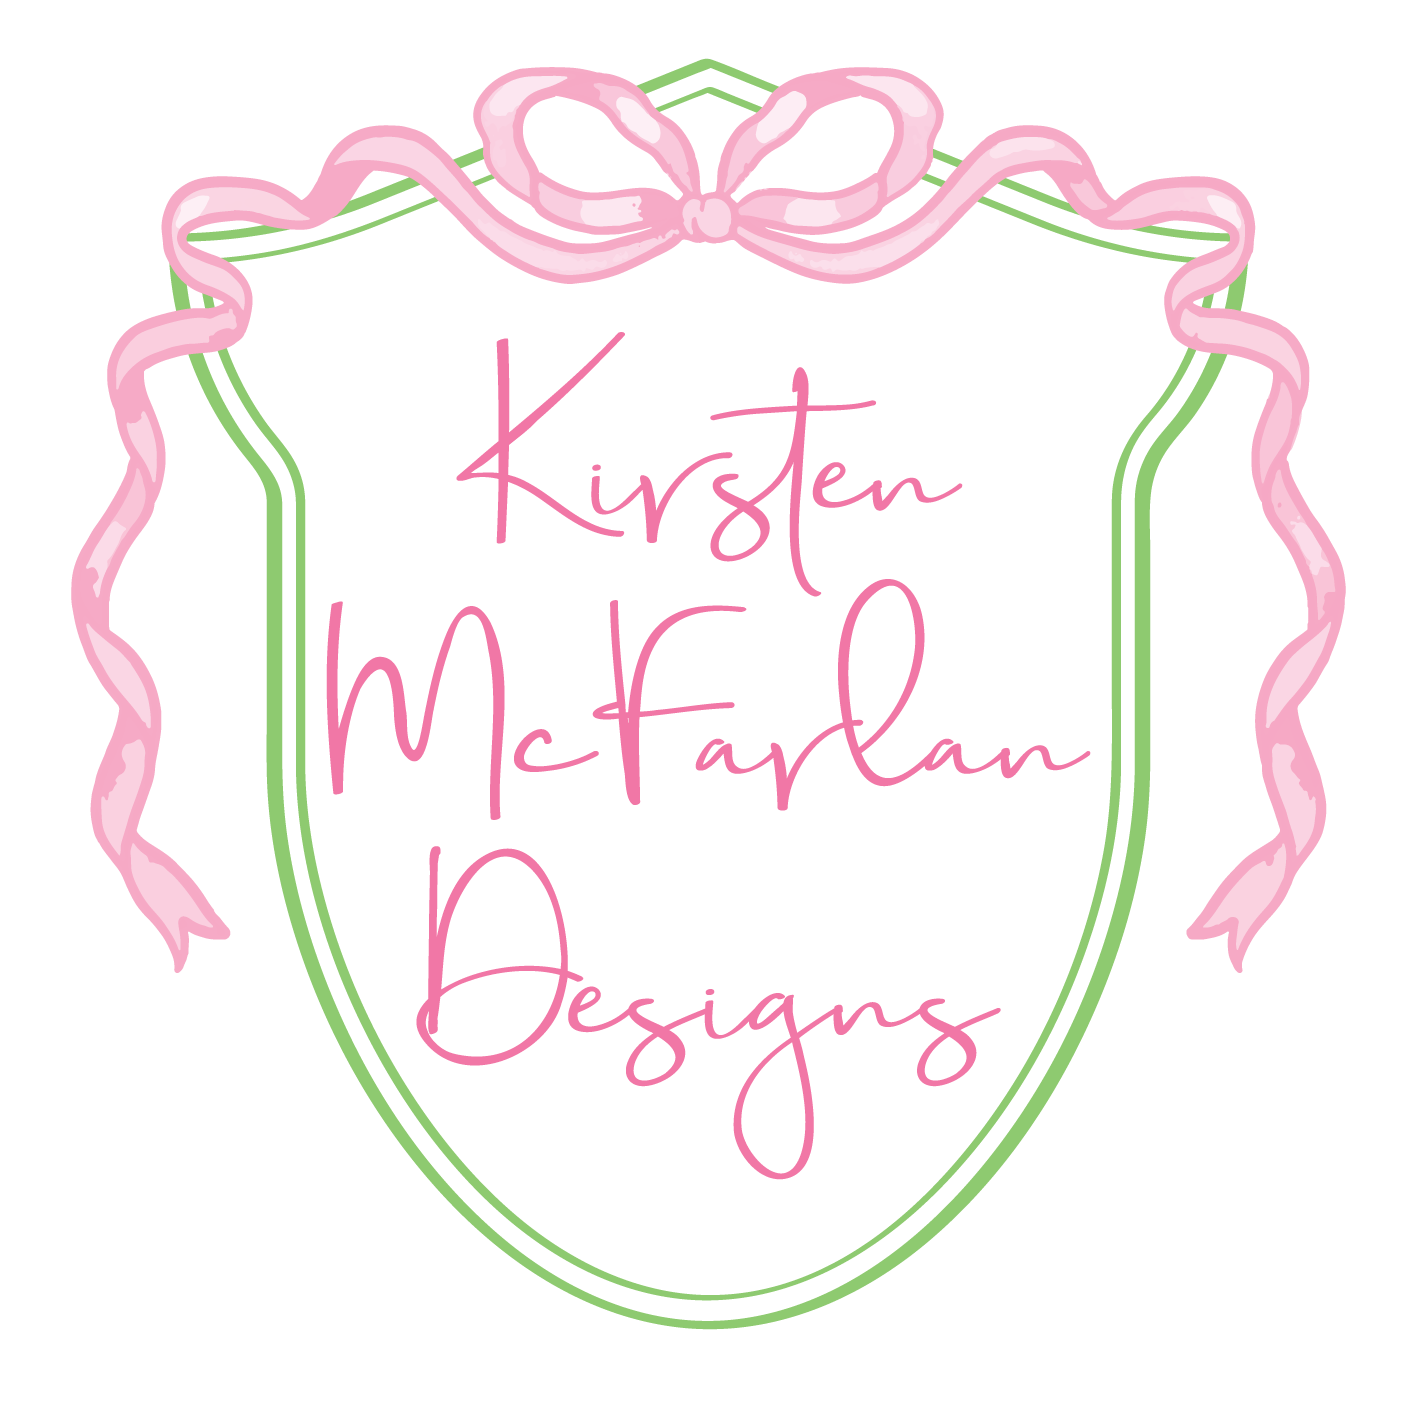 Kirsten McFarlan Designs